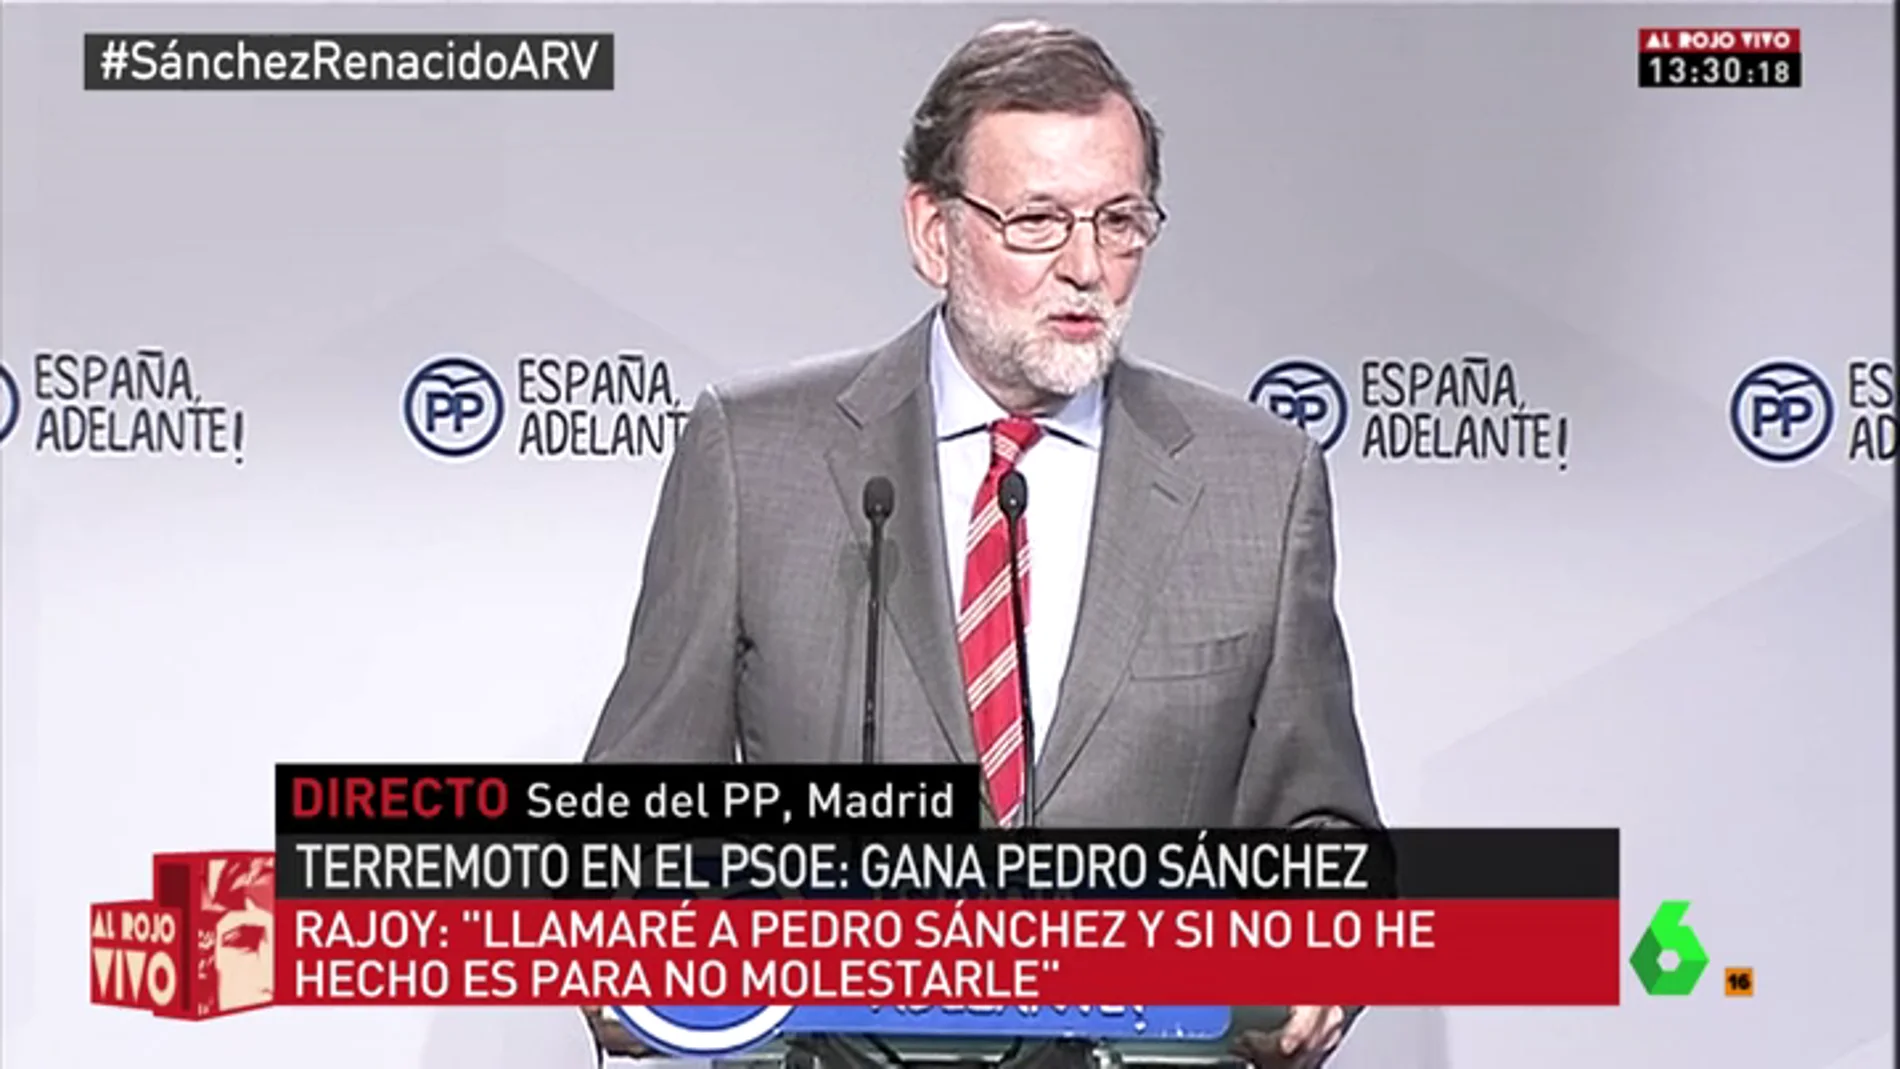 Mariano Rajoy ante los medios